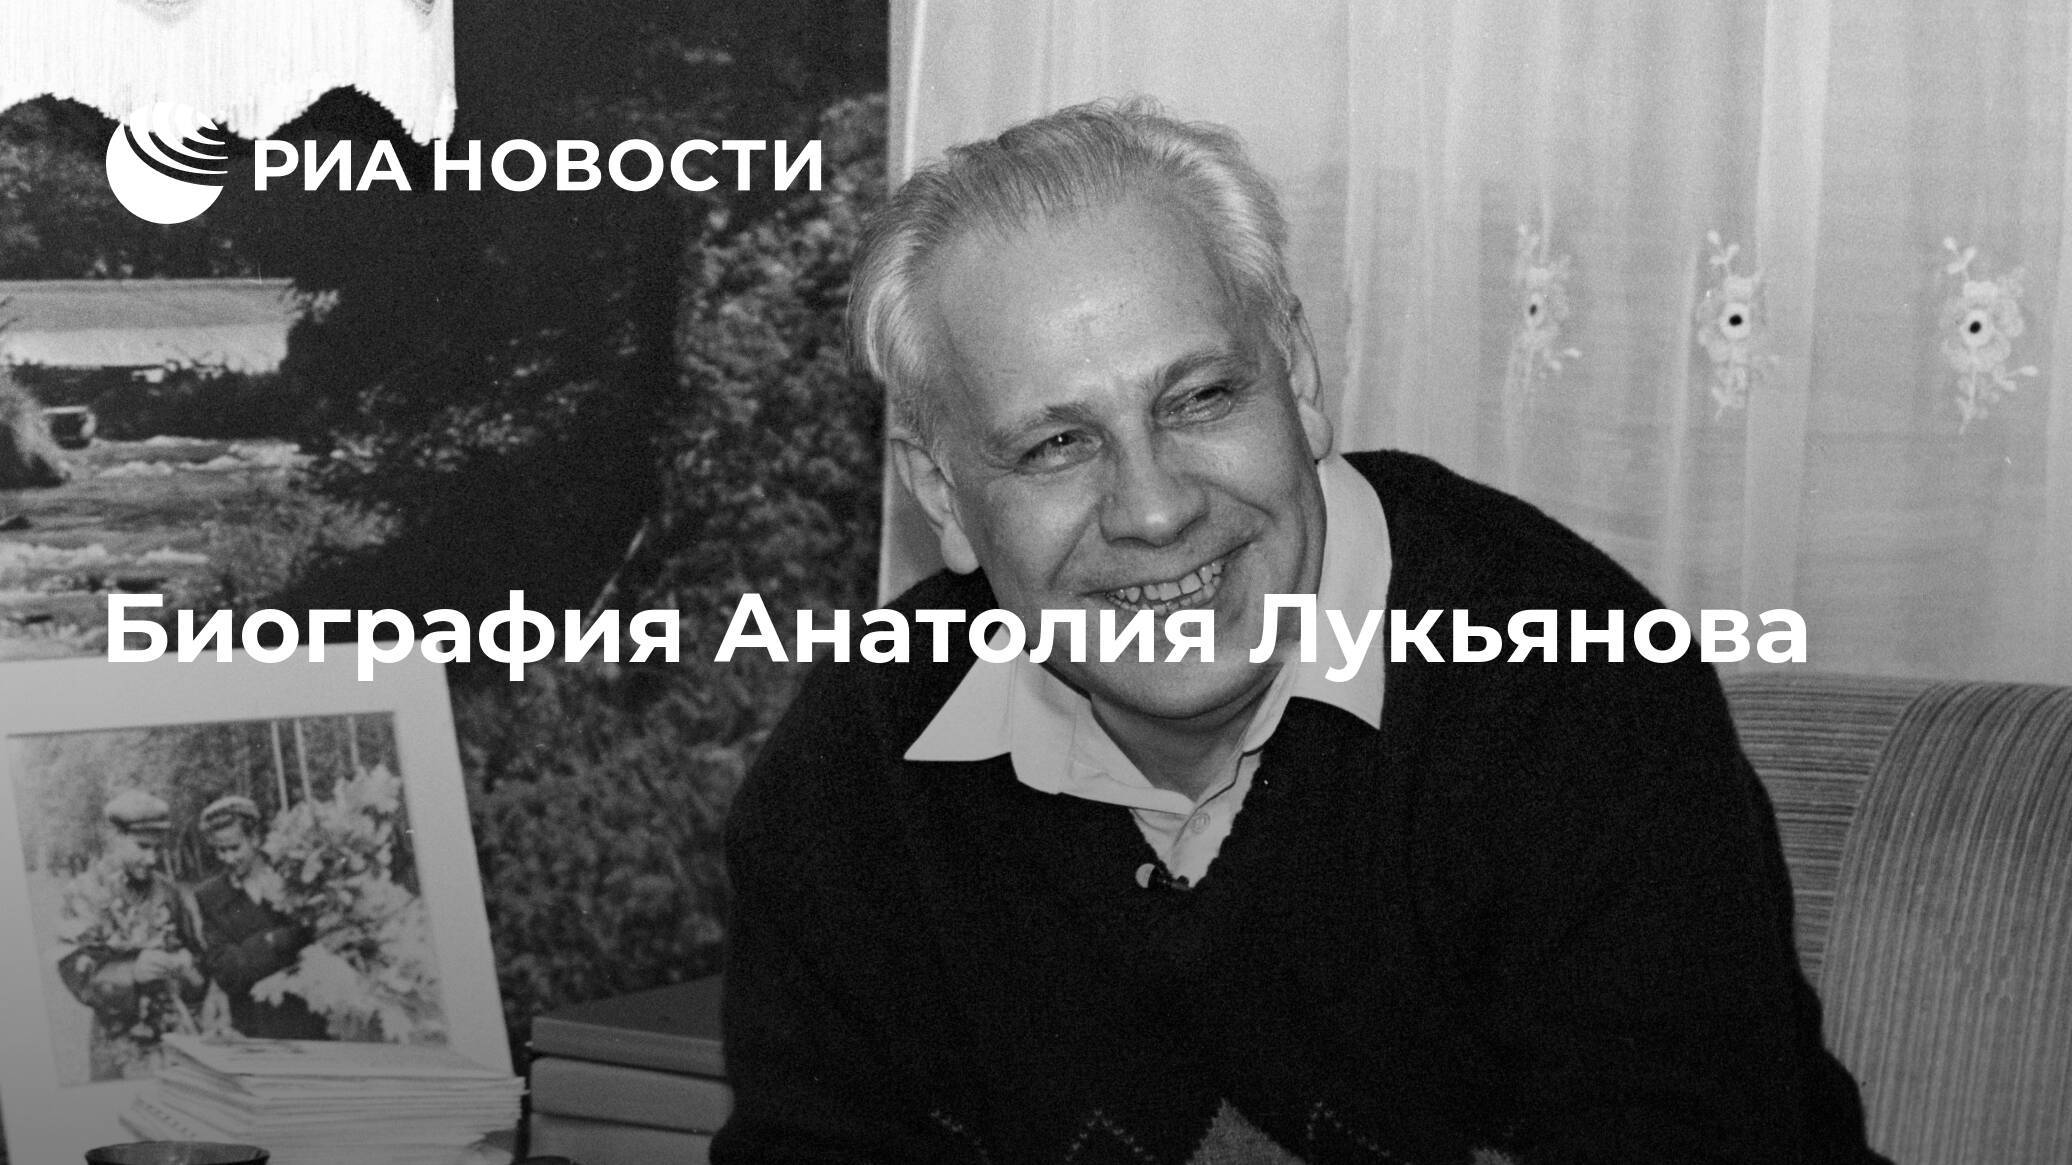 Александра богданова - биография, информация, личная жизнь, фото